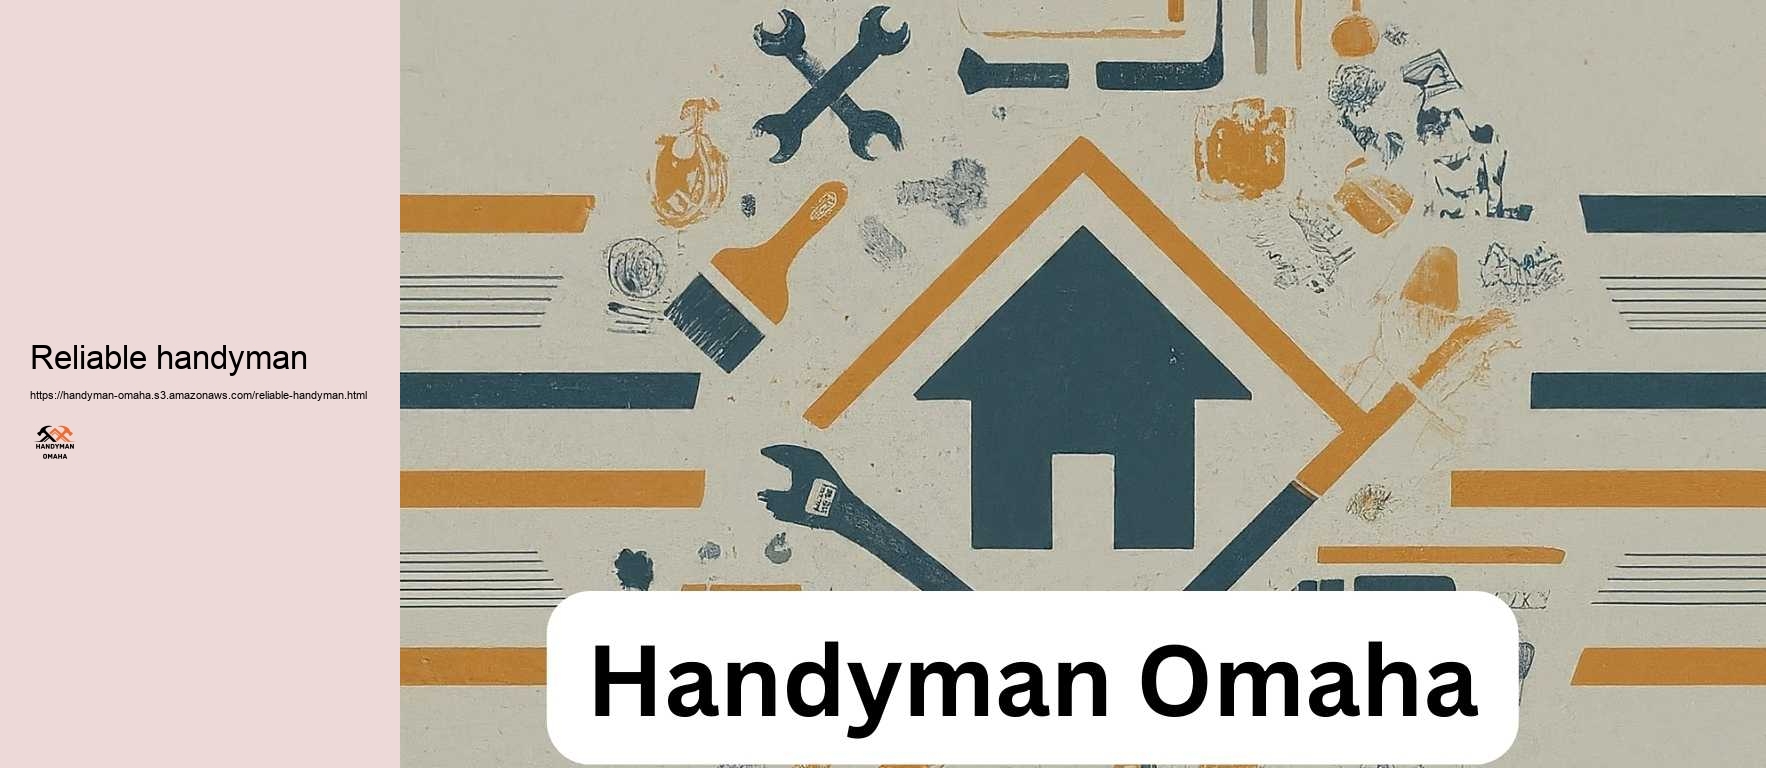 Reliable handyman